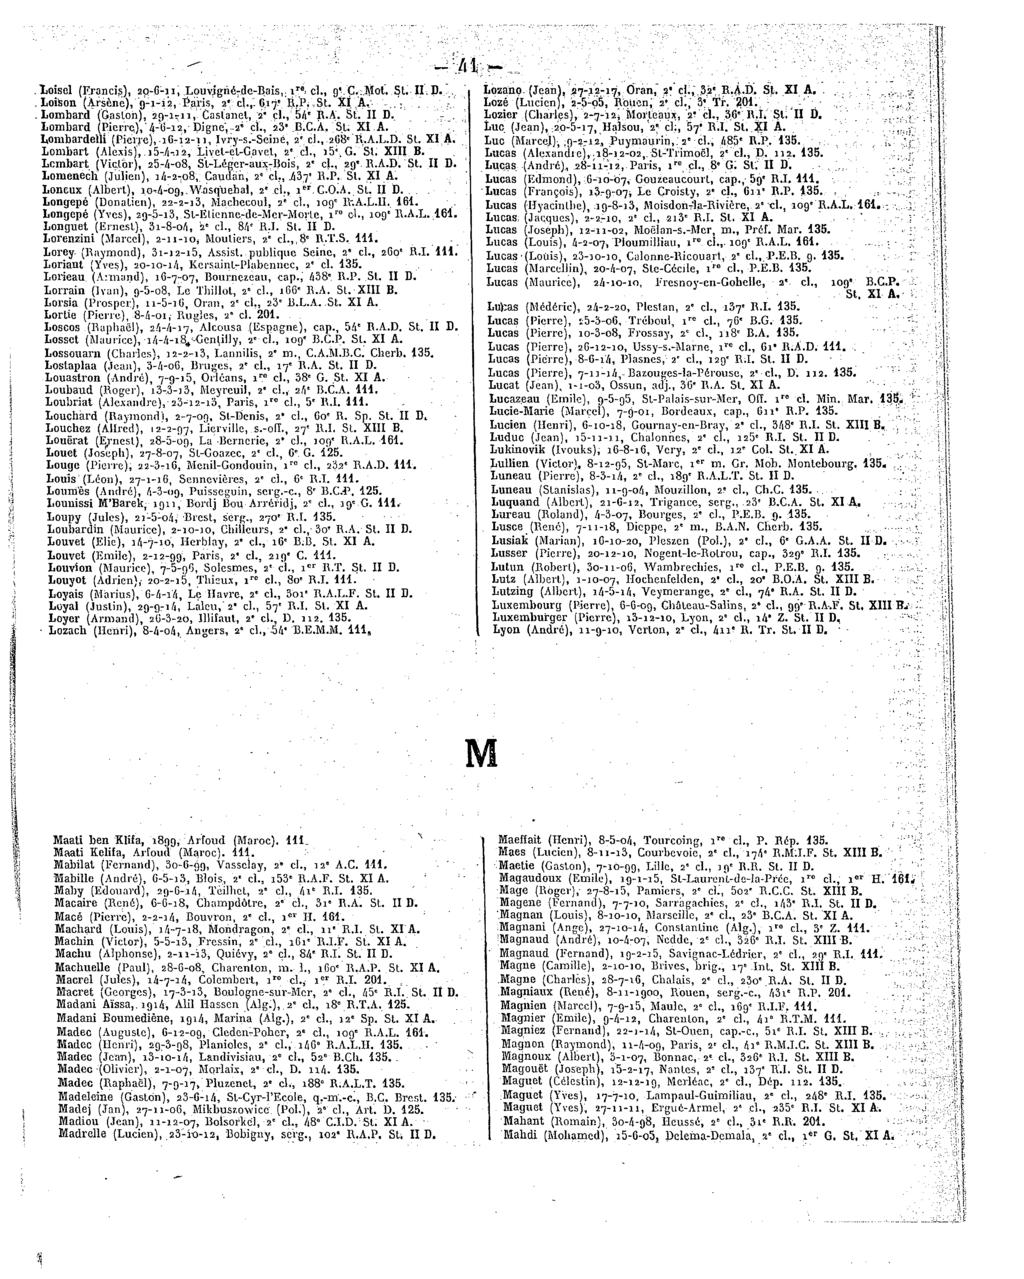 M MaatibenKlifa,1899,Arfoud(Maroc). 111. -. ^... MaatiKelifa,Arfoud(Maroc). 111. Mabilat (Fernand), 30-6-99, Vassciay, 2*ch,12"A.C.111. Mabille(André), 6-5-i3,Blois,2*cl.,i53'R.A.F.St.XIA.